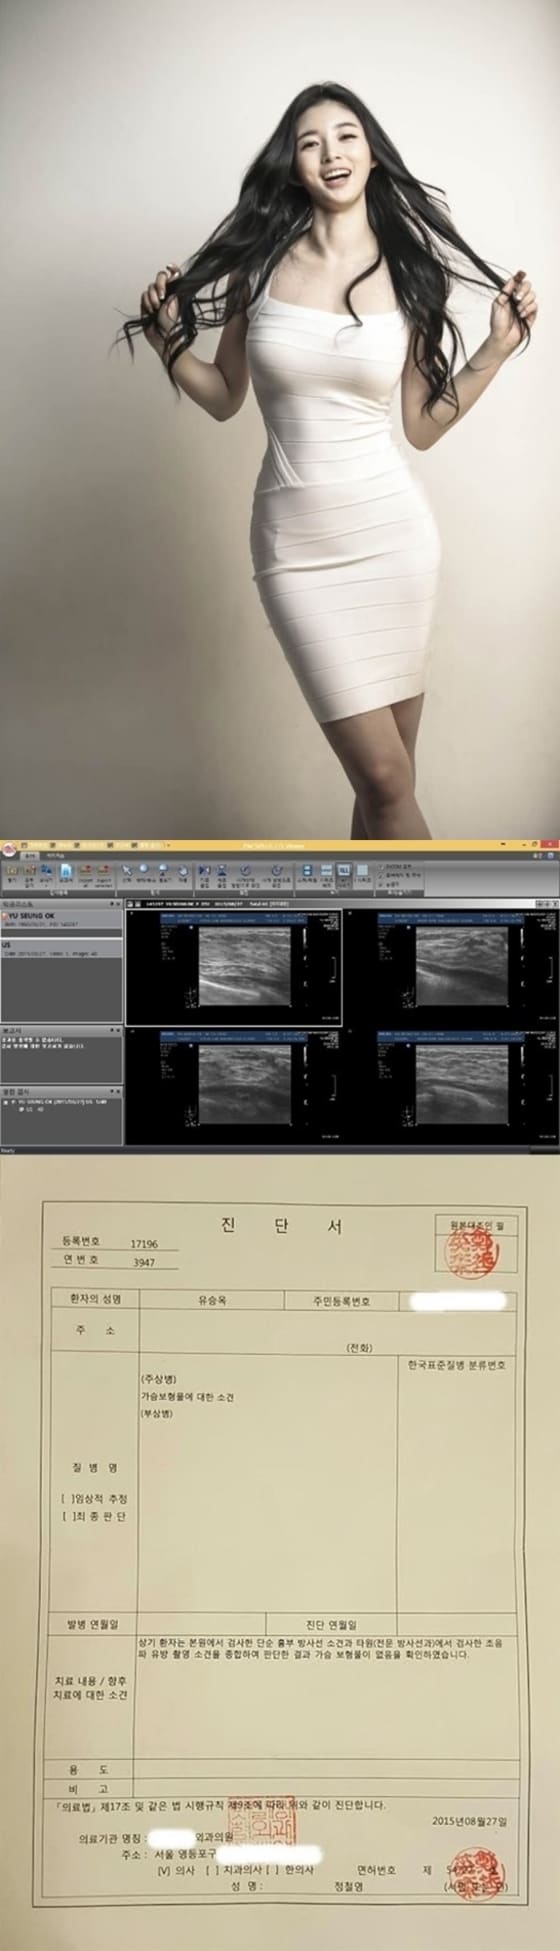 유승옥 측이 가슴수술 의혹을 해명하기 위해 CT 촬영본을 공개했다. © News1스포츠 / 프로페셔널 엔터테인먼트